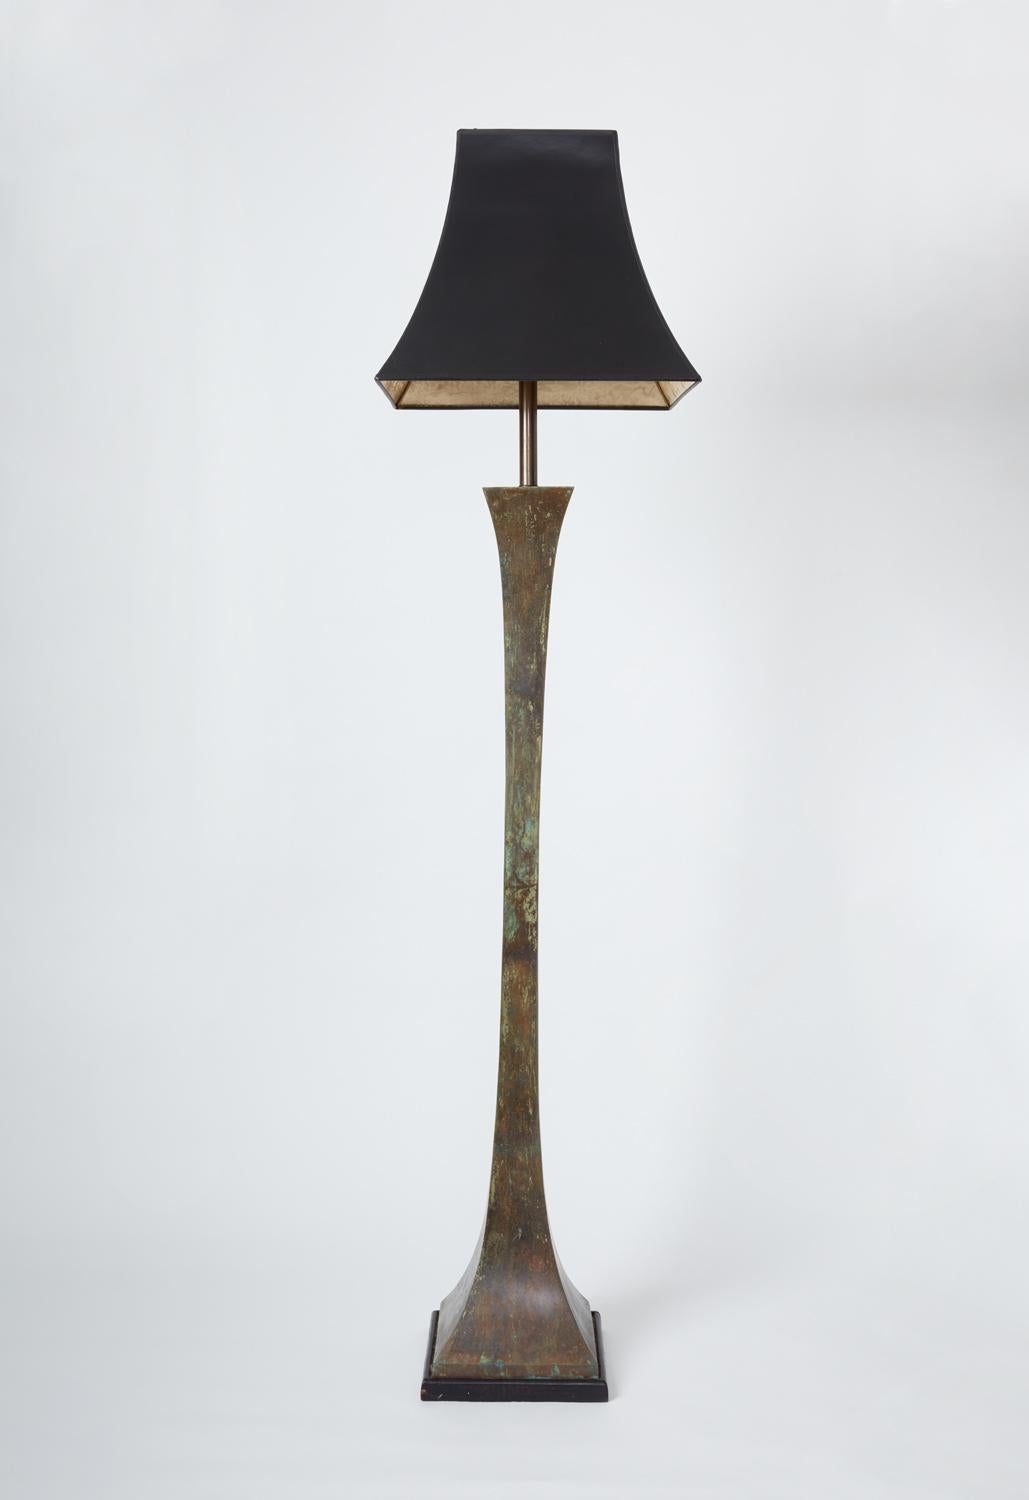 Une paire de lampes sur pied par Stewart Ross James pour Hansen, avec une patine vert-de-gris sur le bronze lourd. Base en bois massif.

Peuvent être achetés individuellement.